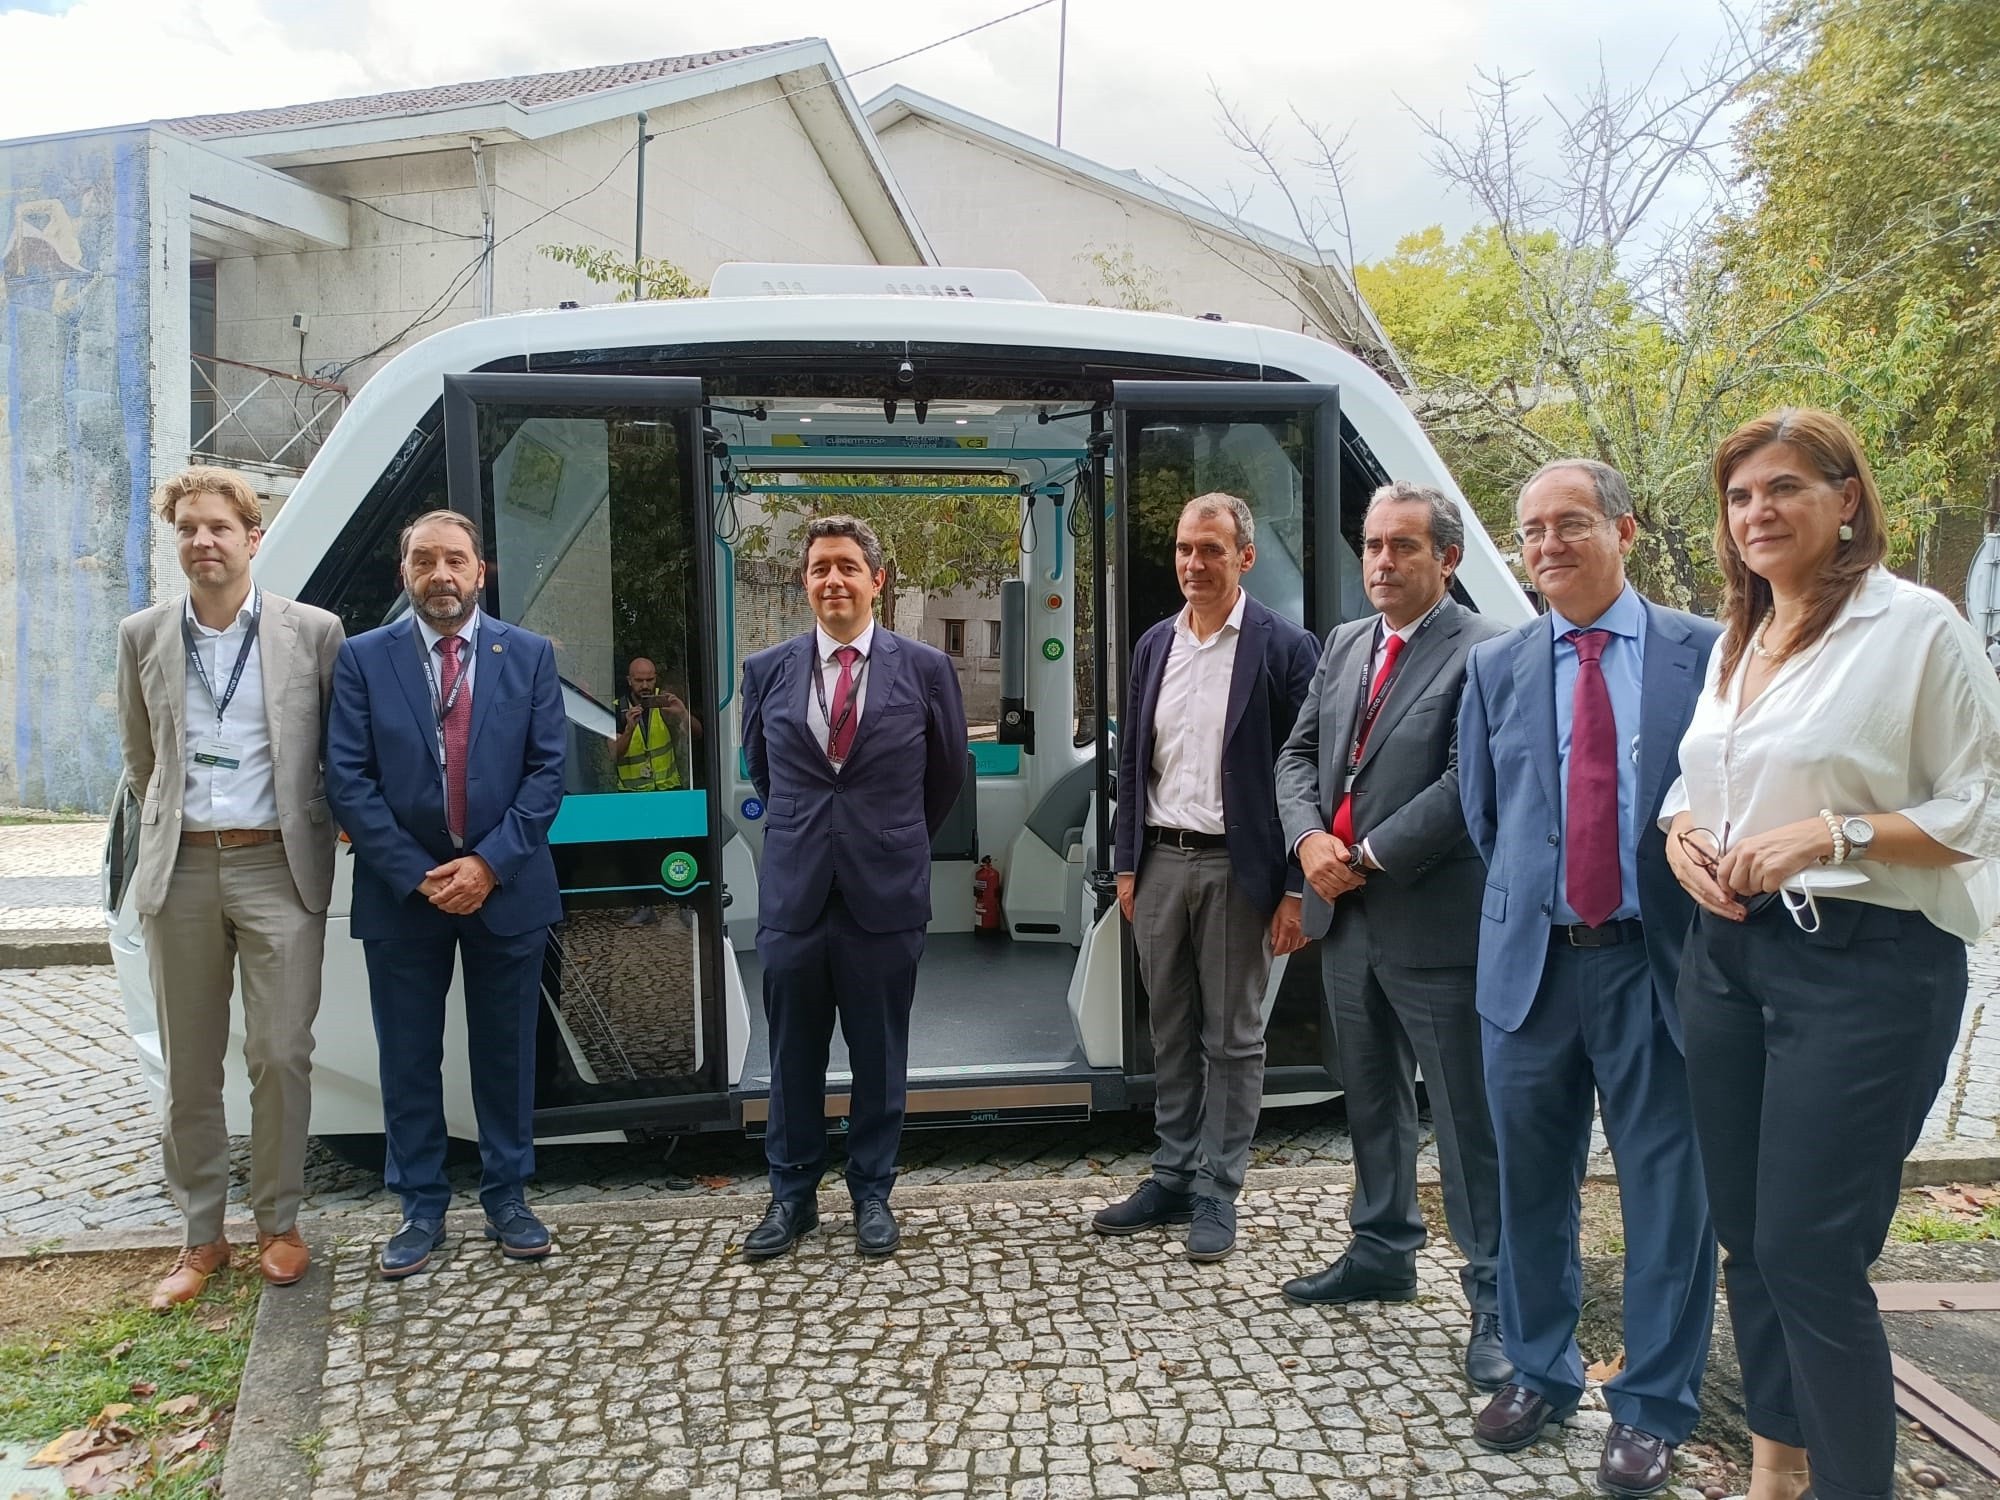 O projeto europeu 5G-Mobix está a testar um veículo autónomo com tecnologia 5G na fronteira entre Espanha e Portugal